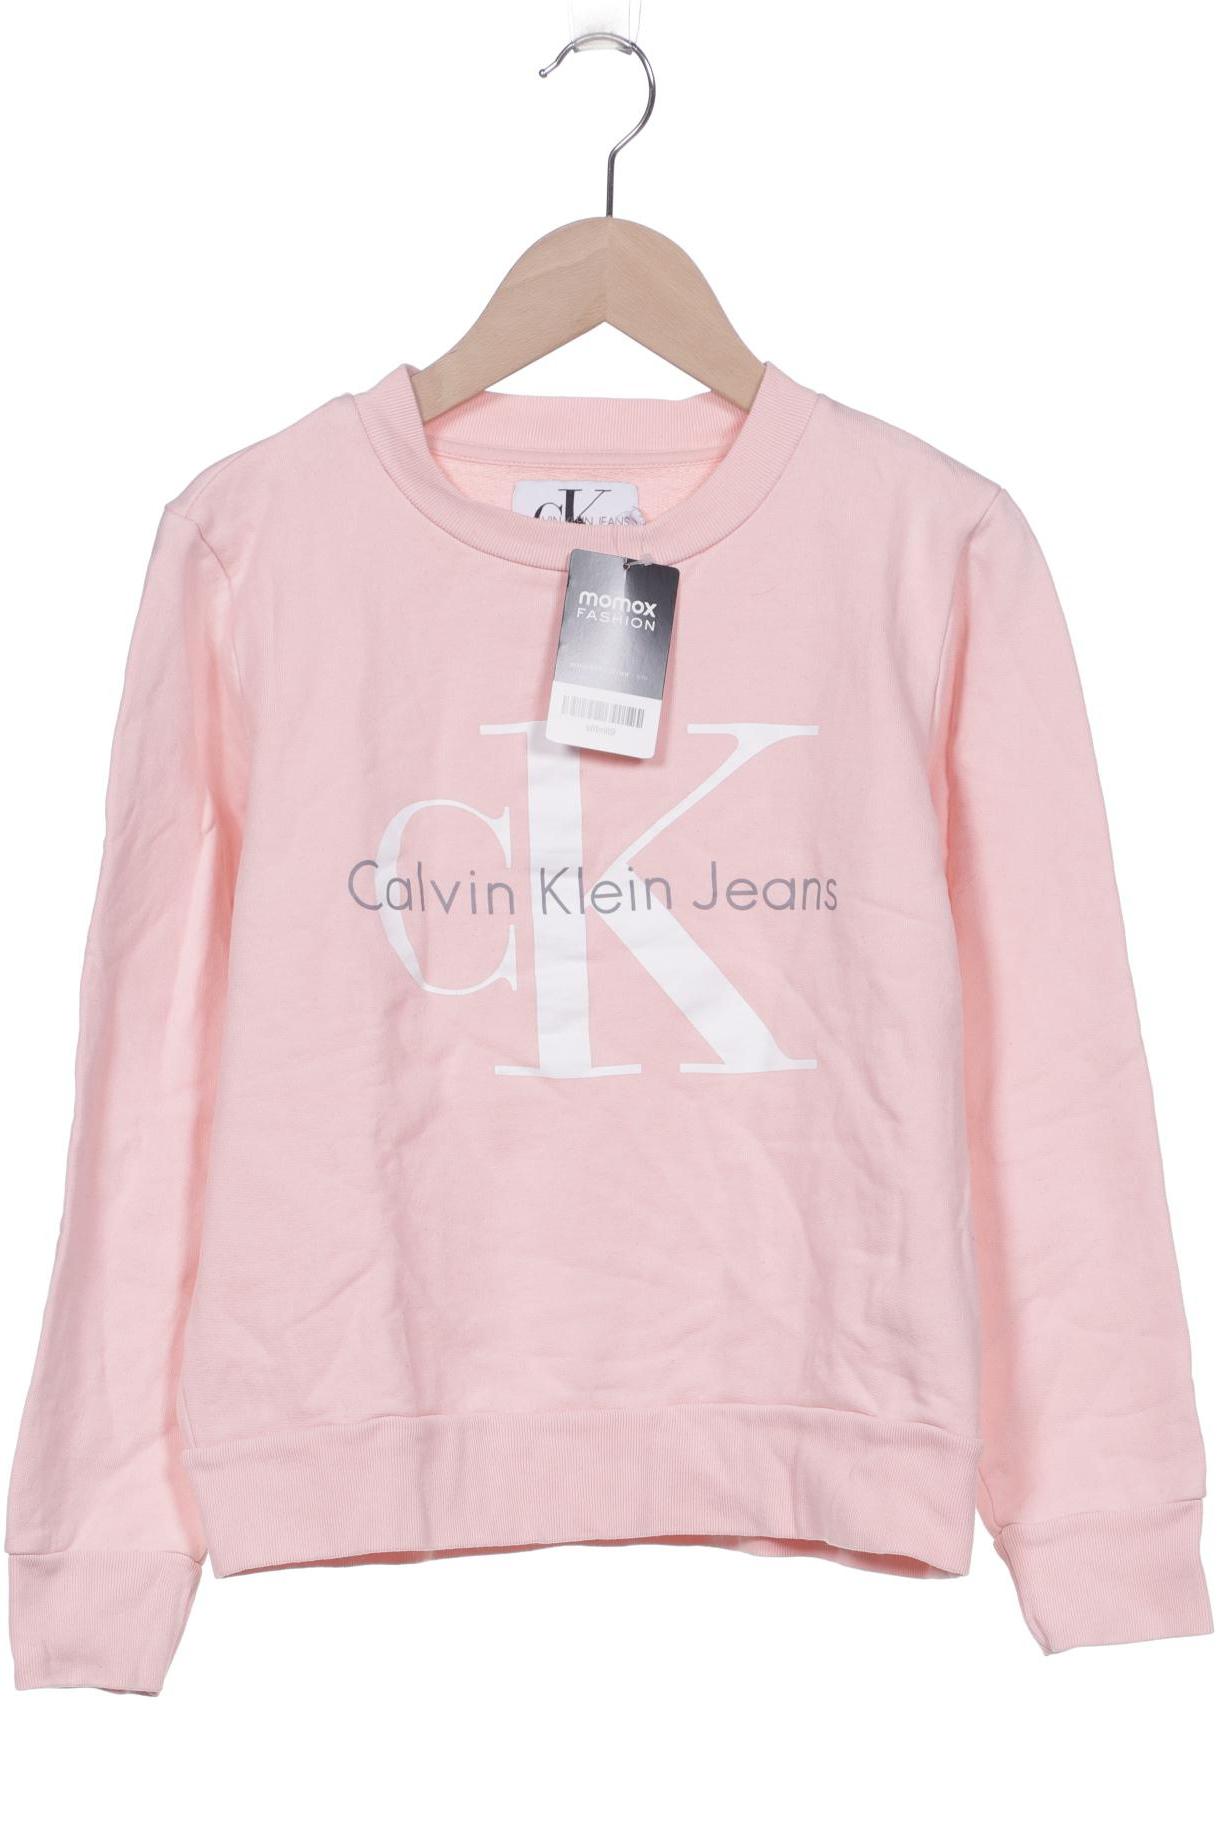 Calvin Klein Jeans Damen Sweatshirt, pink von Calvin Klein Jeans